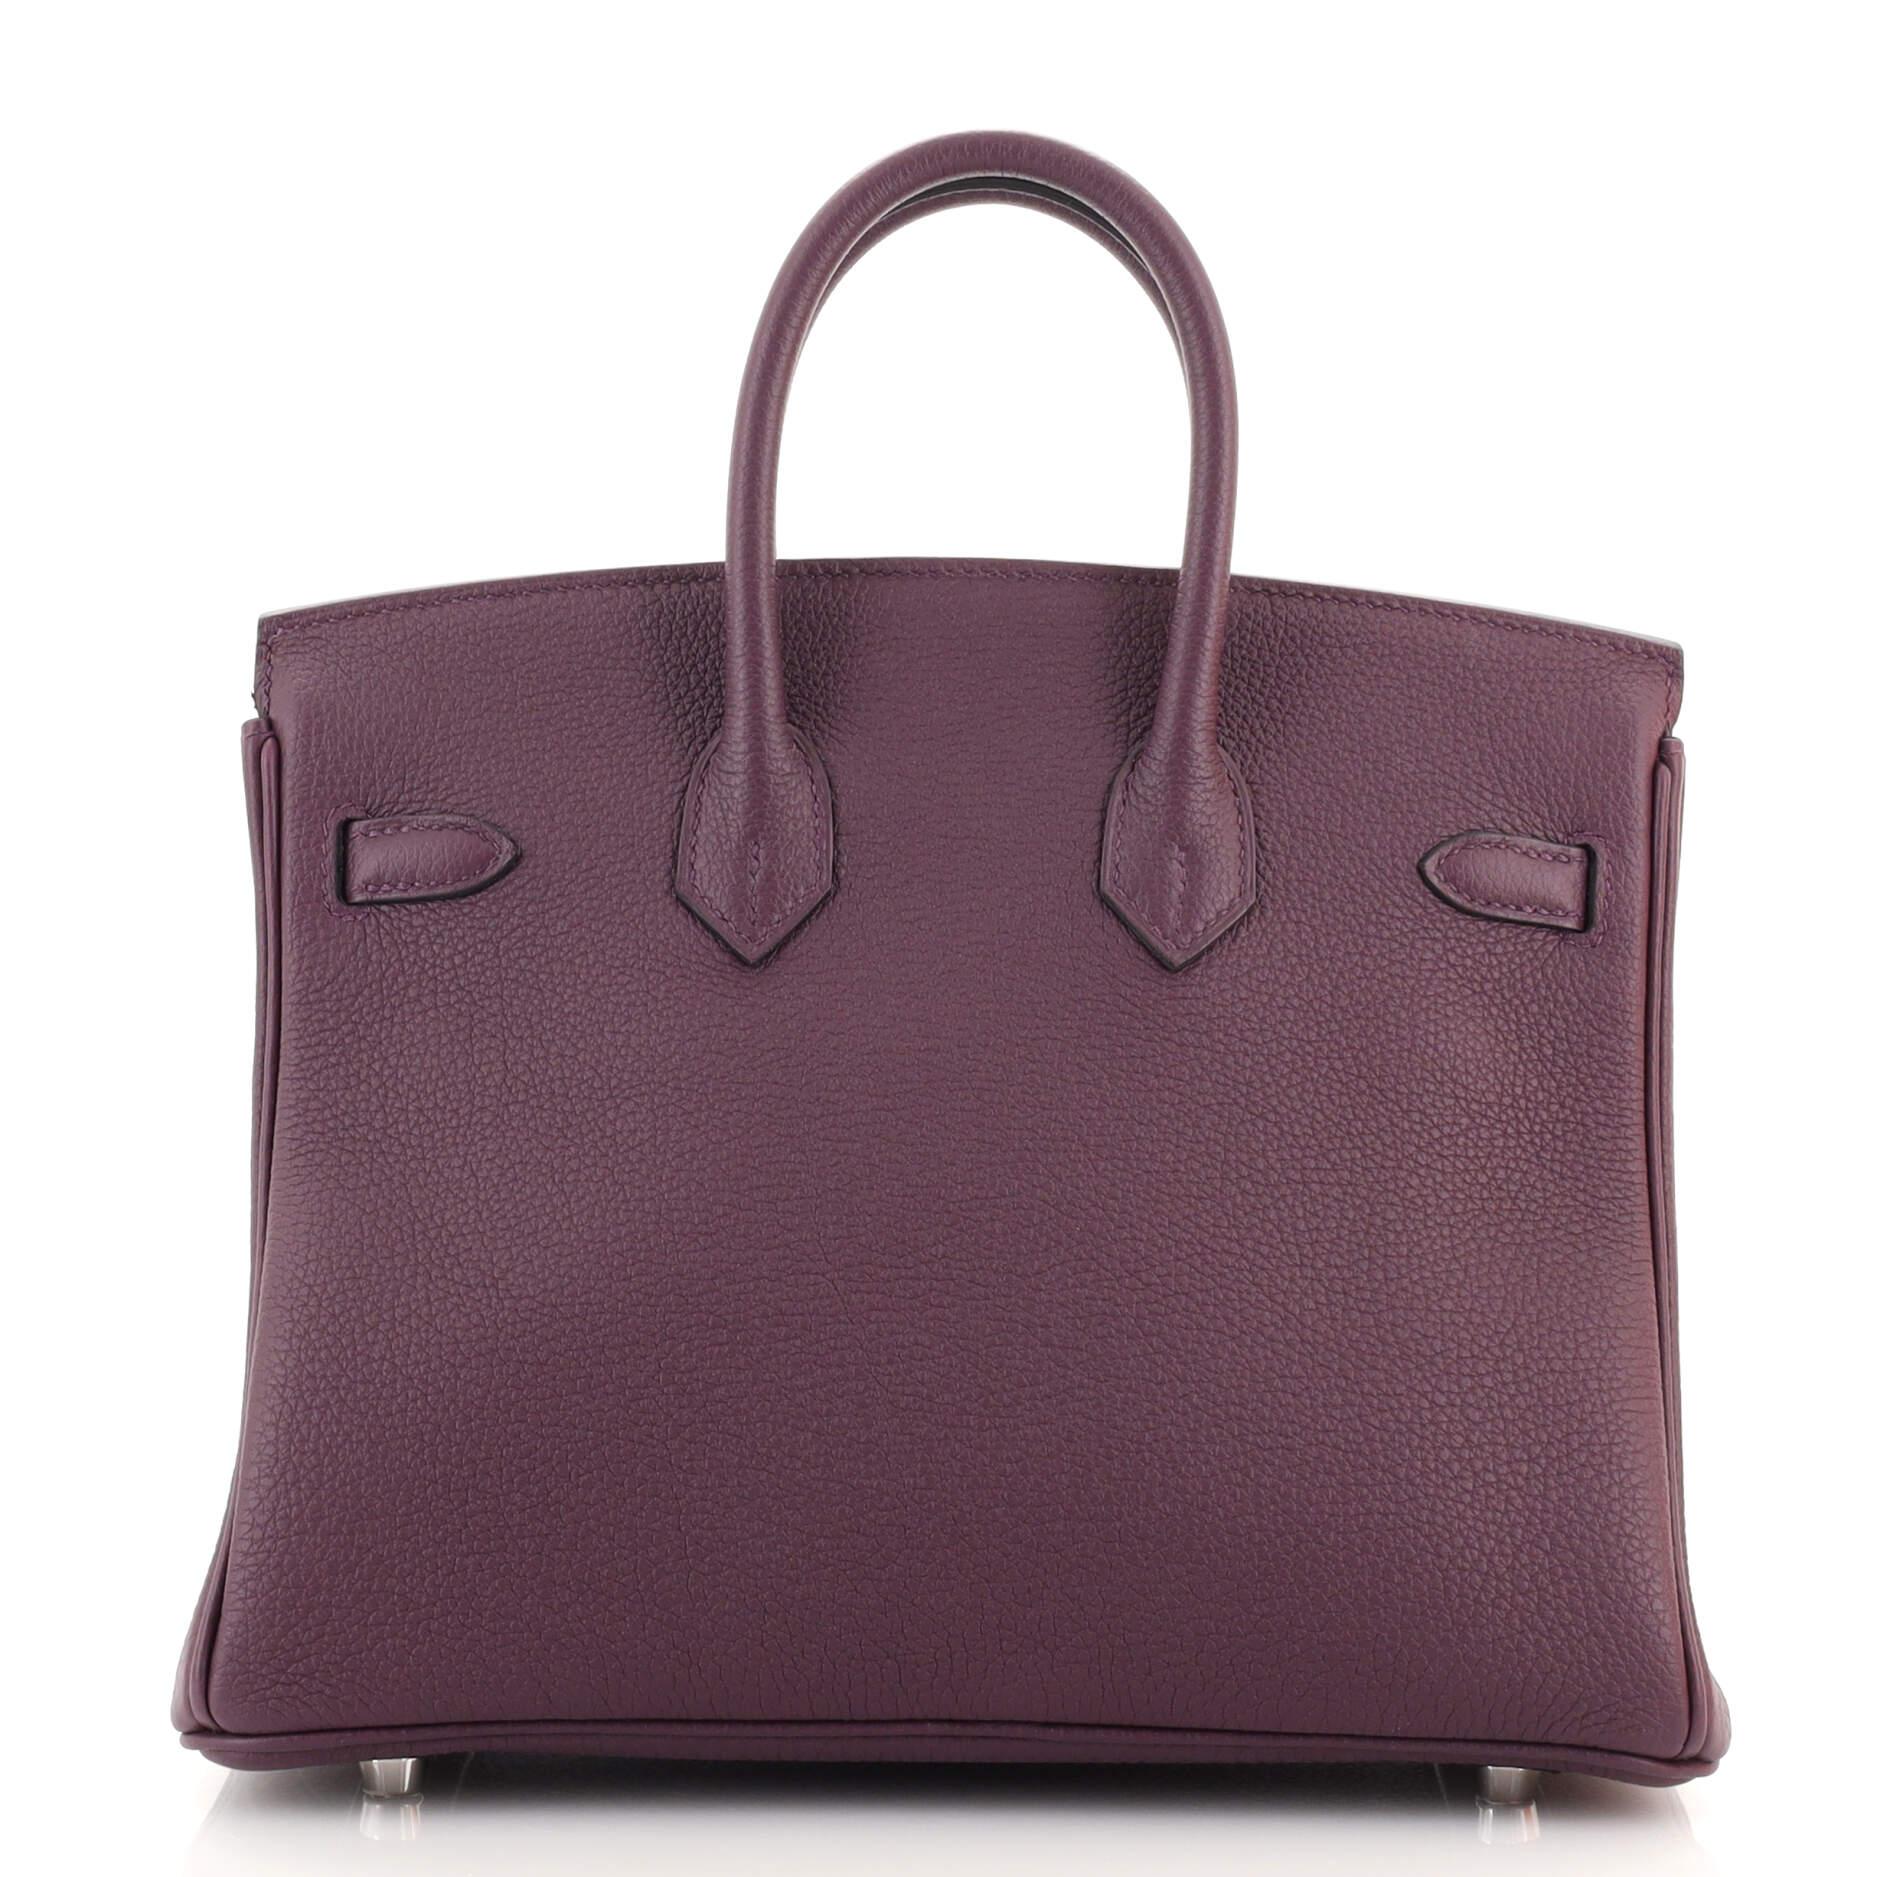 Women's or Men's Hermes Birkin Handbag Aubergine Togo with Palladium Hardware 25